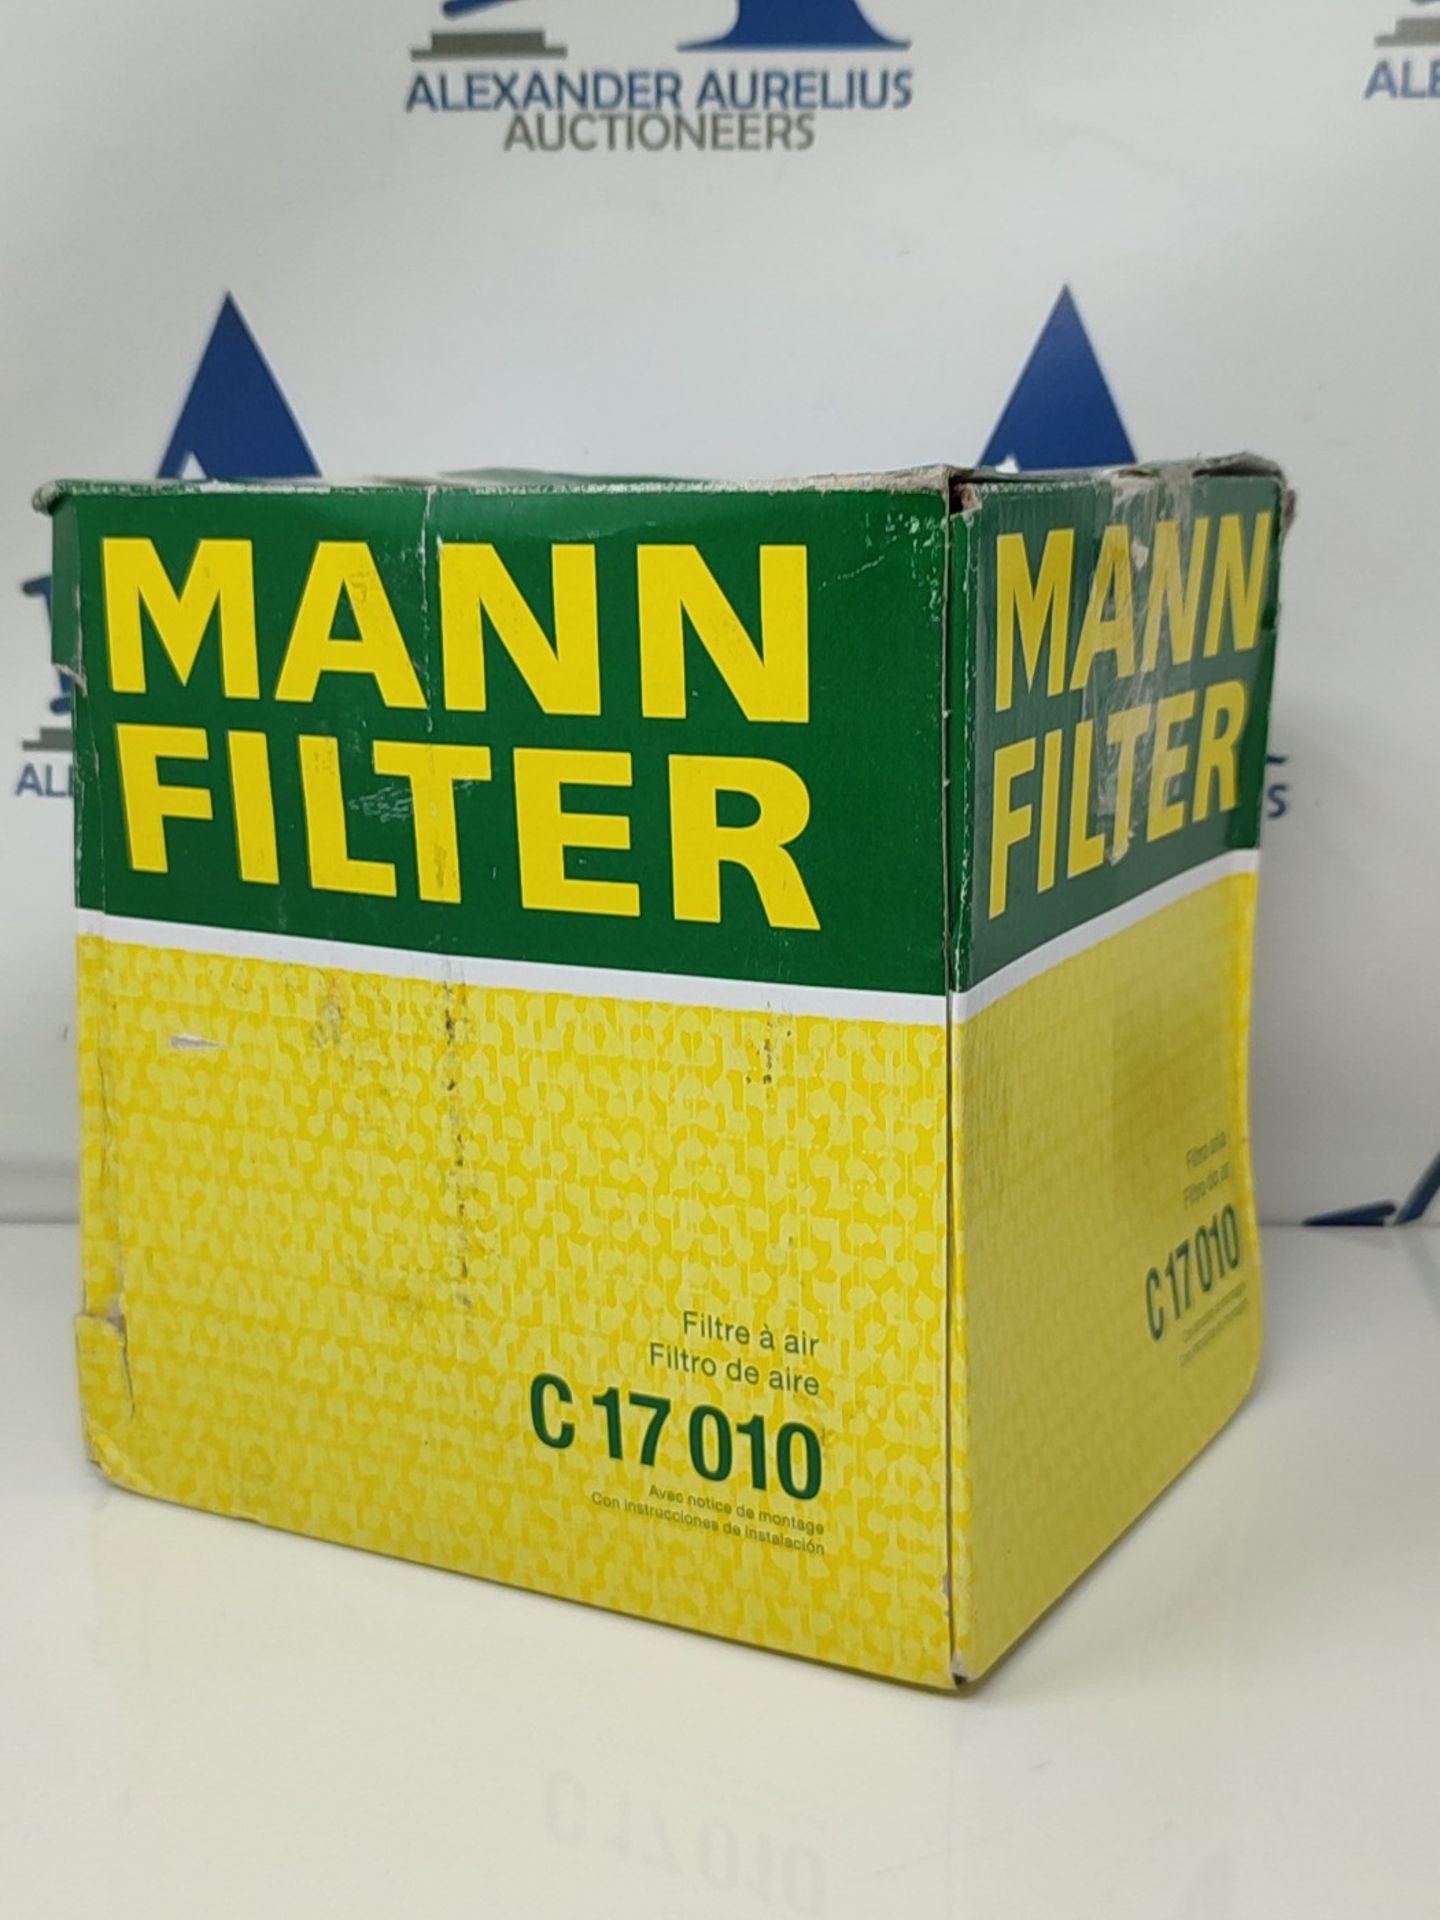 MANN-FILTER C 17 010 Air Filter  For Passenger Cars - Image 2 of 3